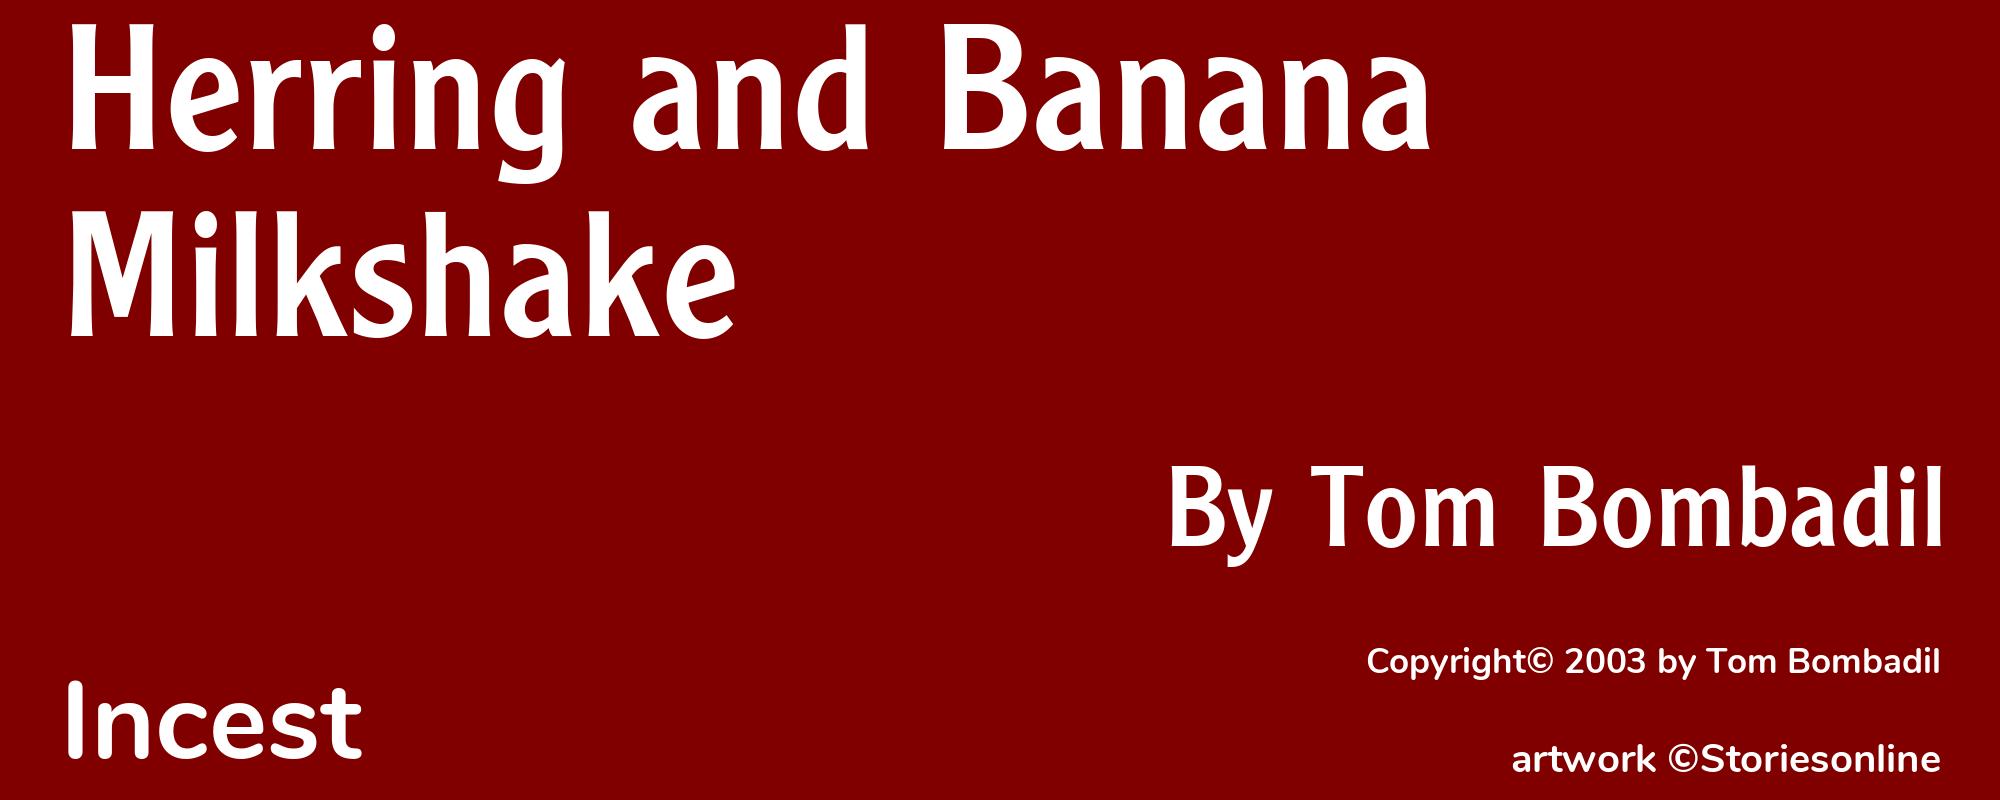 Herring and Banana Milkshake - Cover